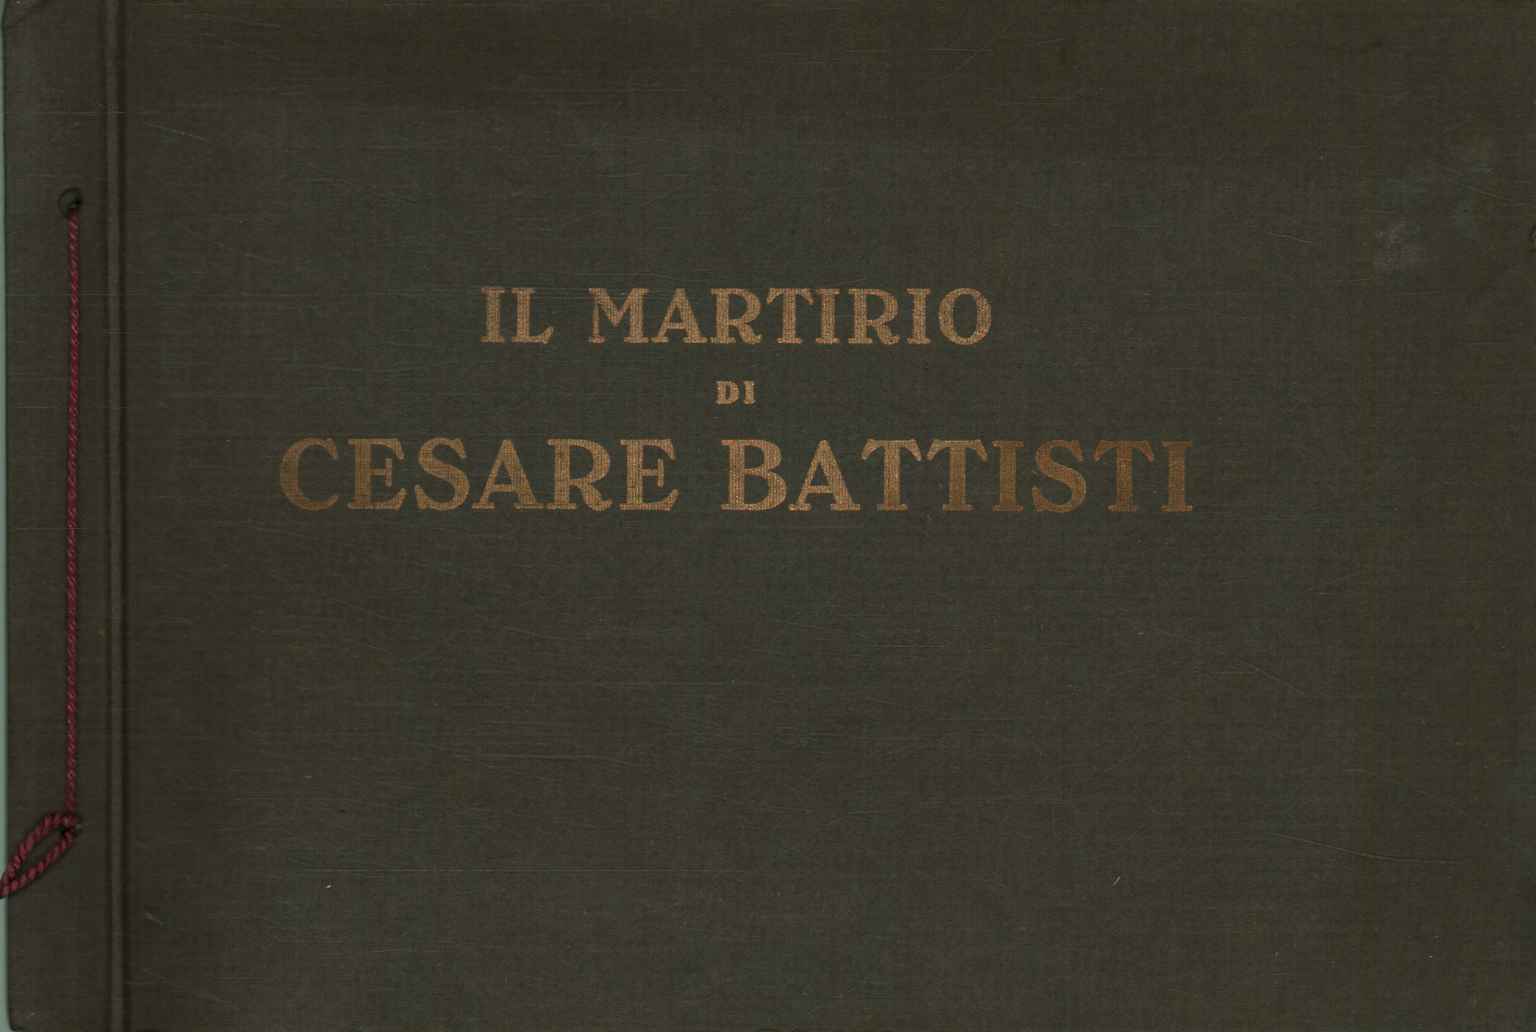 Il martirio di Cesare Battisti